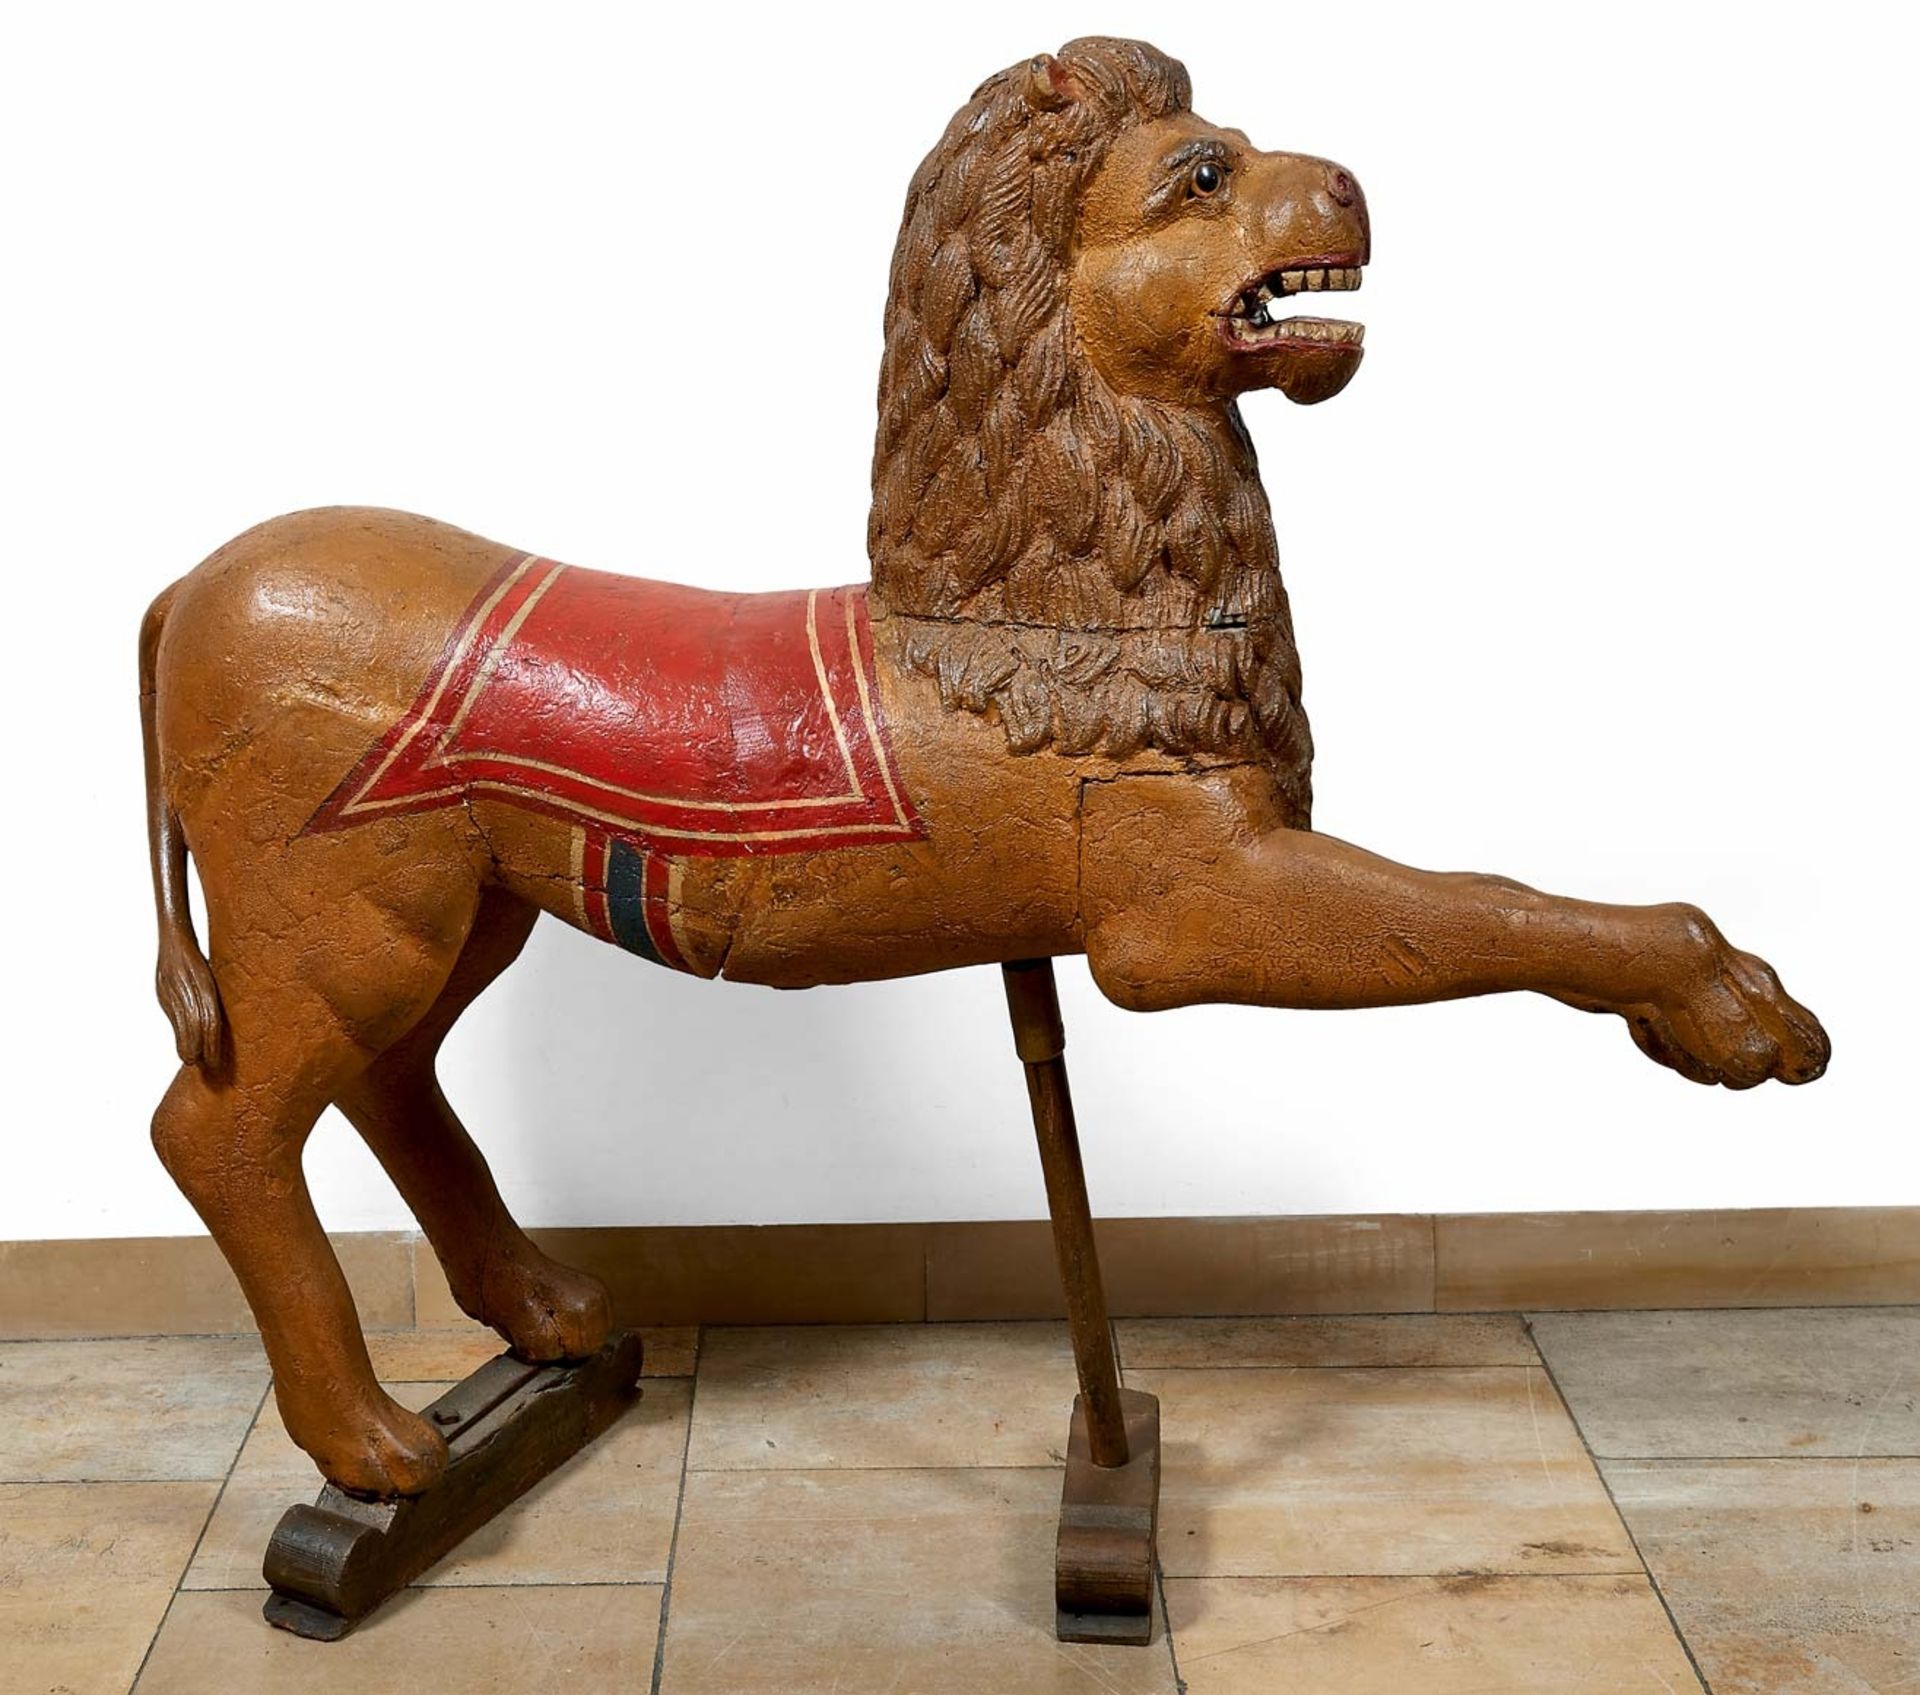 Seltene KarussellfigurUm 1800 oder früherVollrund gestalteter Löwe mit erhobenen Vordertatzen und